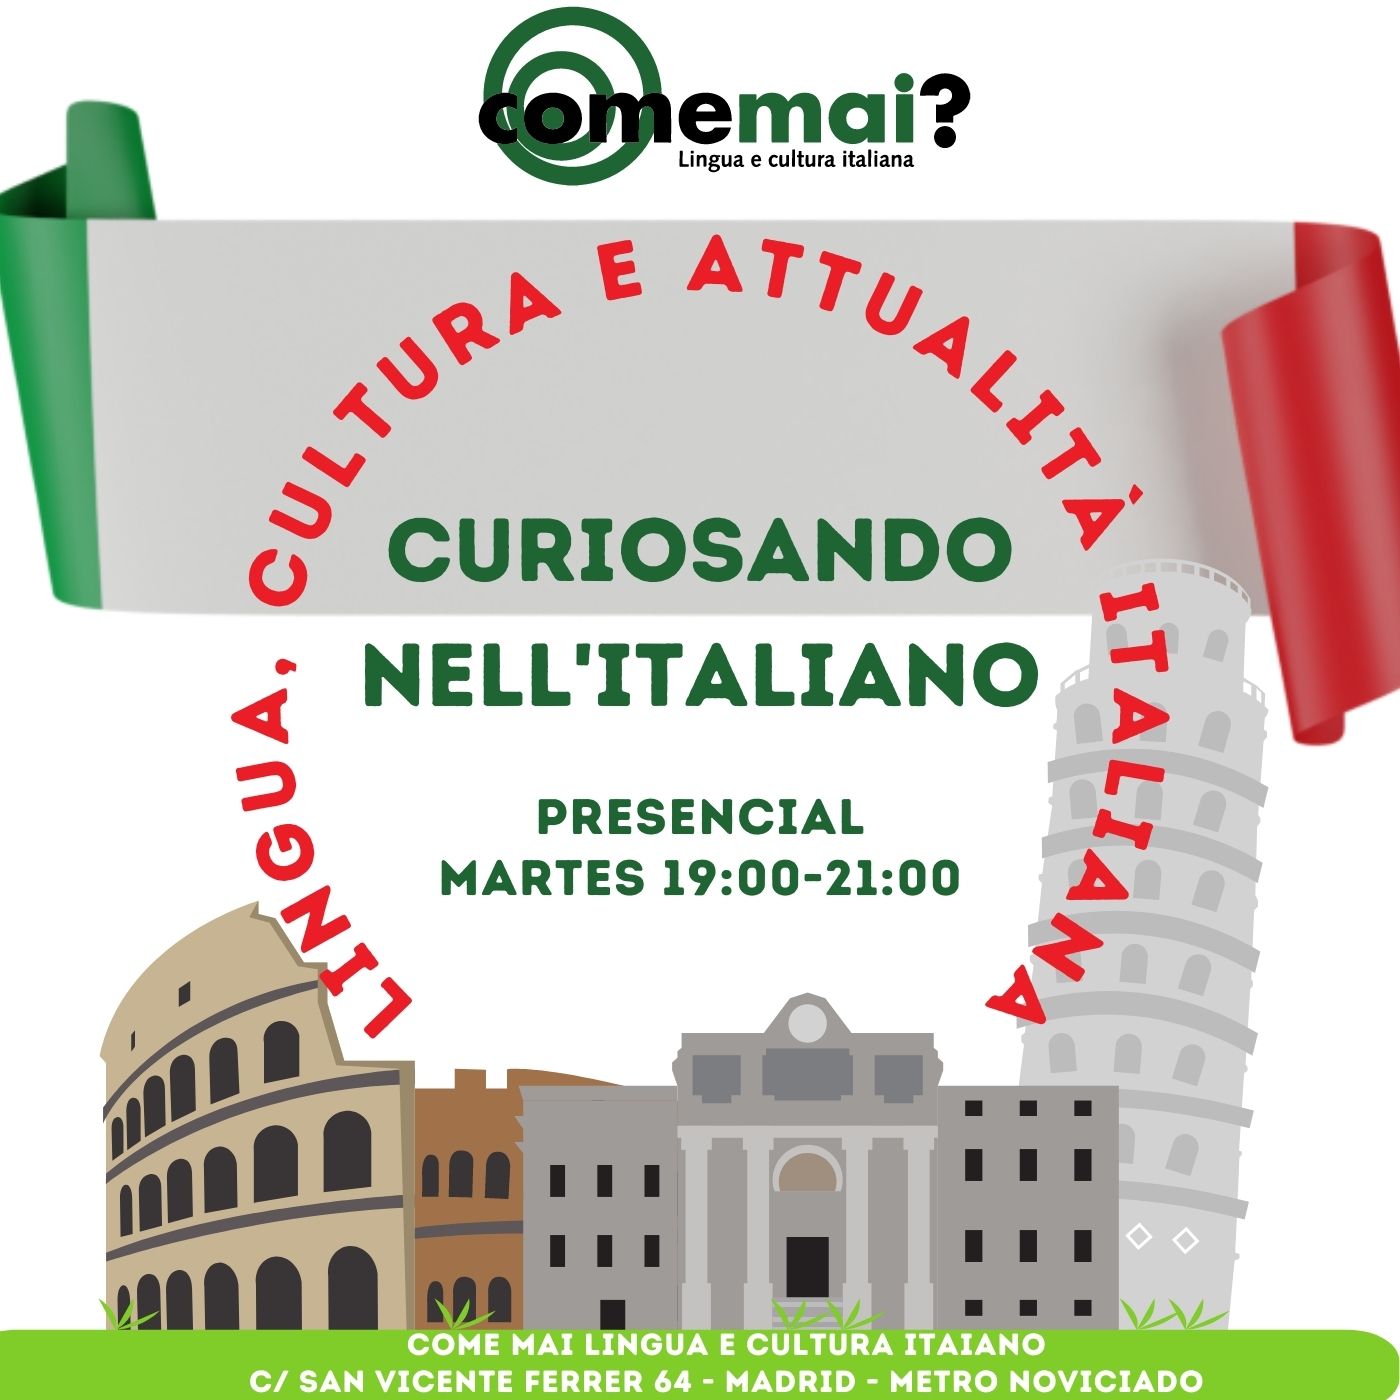 Curso de conversación en italiano y cultura italiana